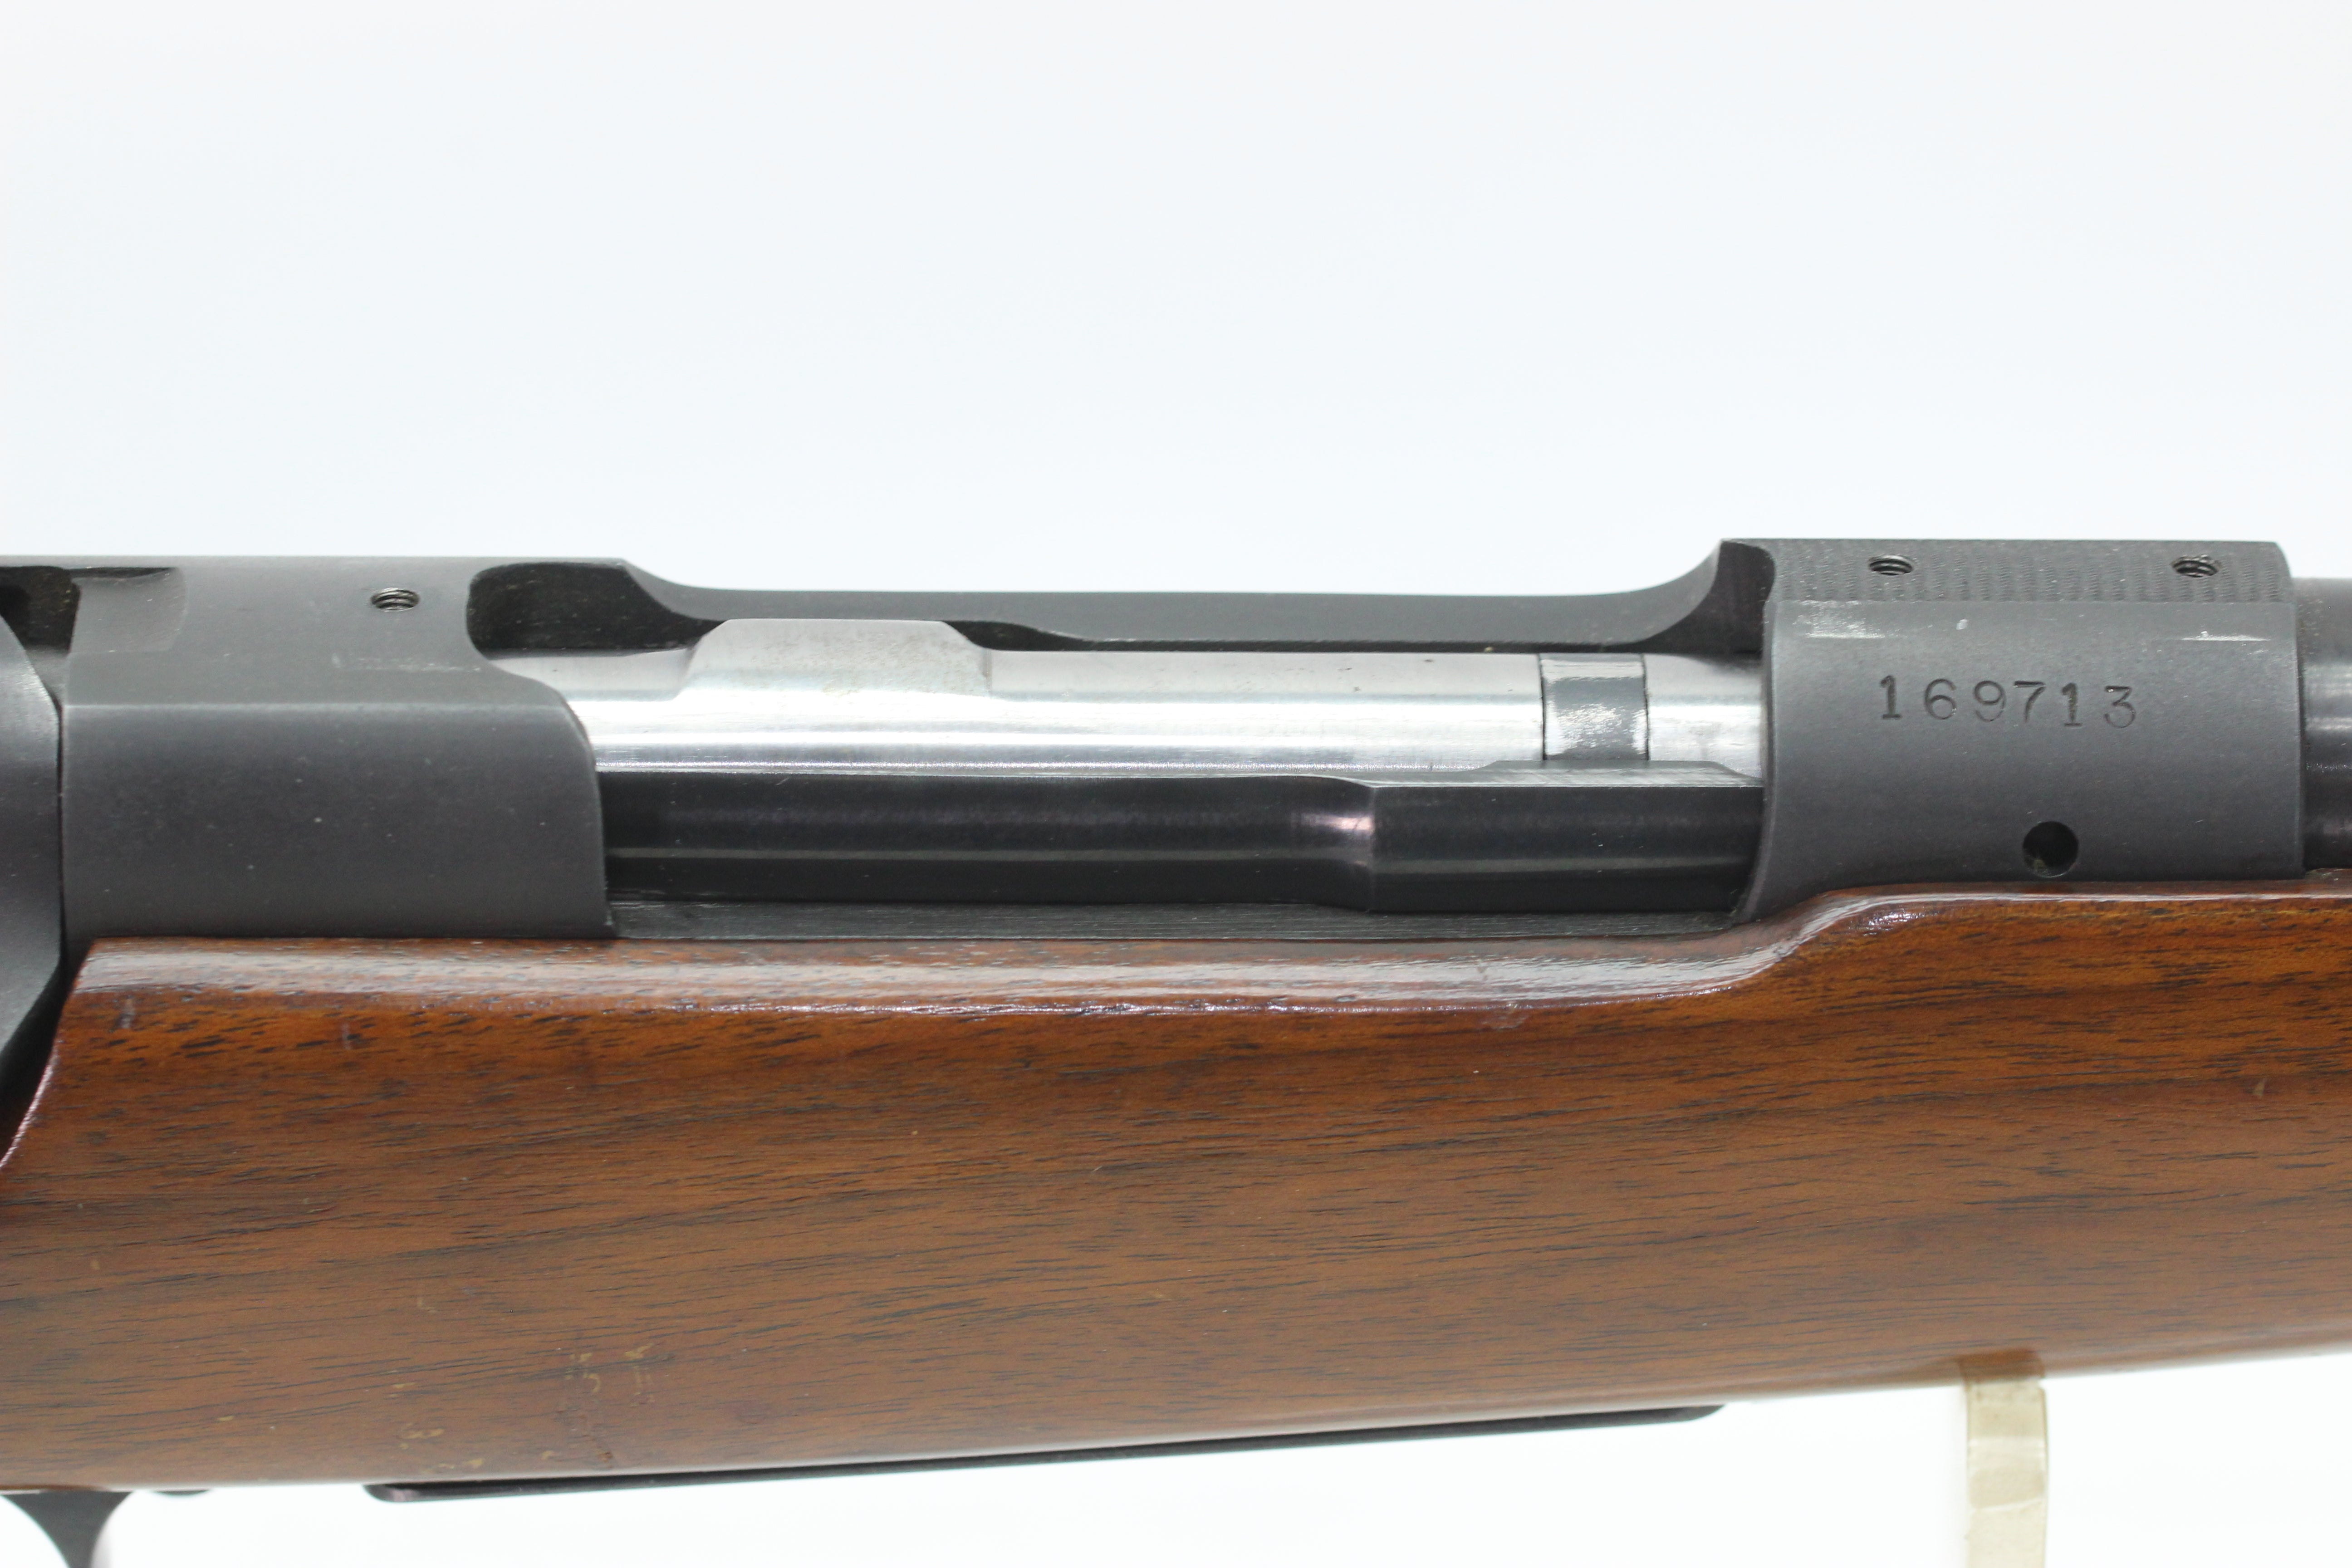 .300 H&H Mag Standard Rifle - 1950